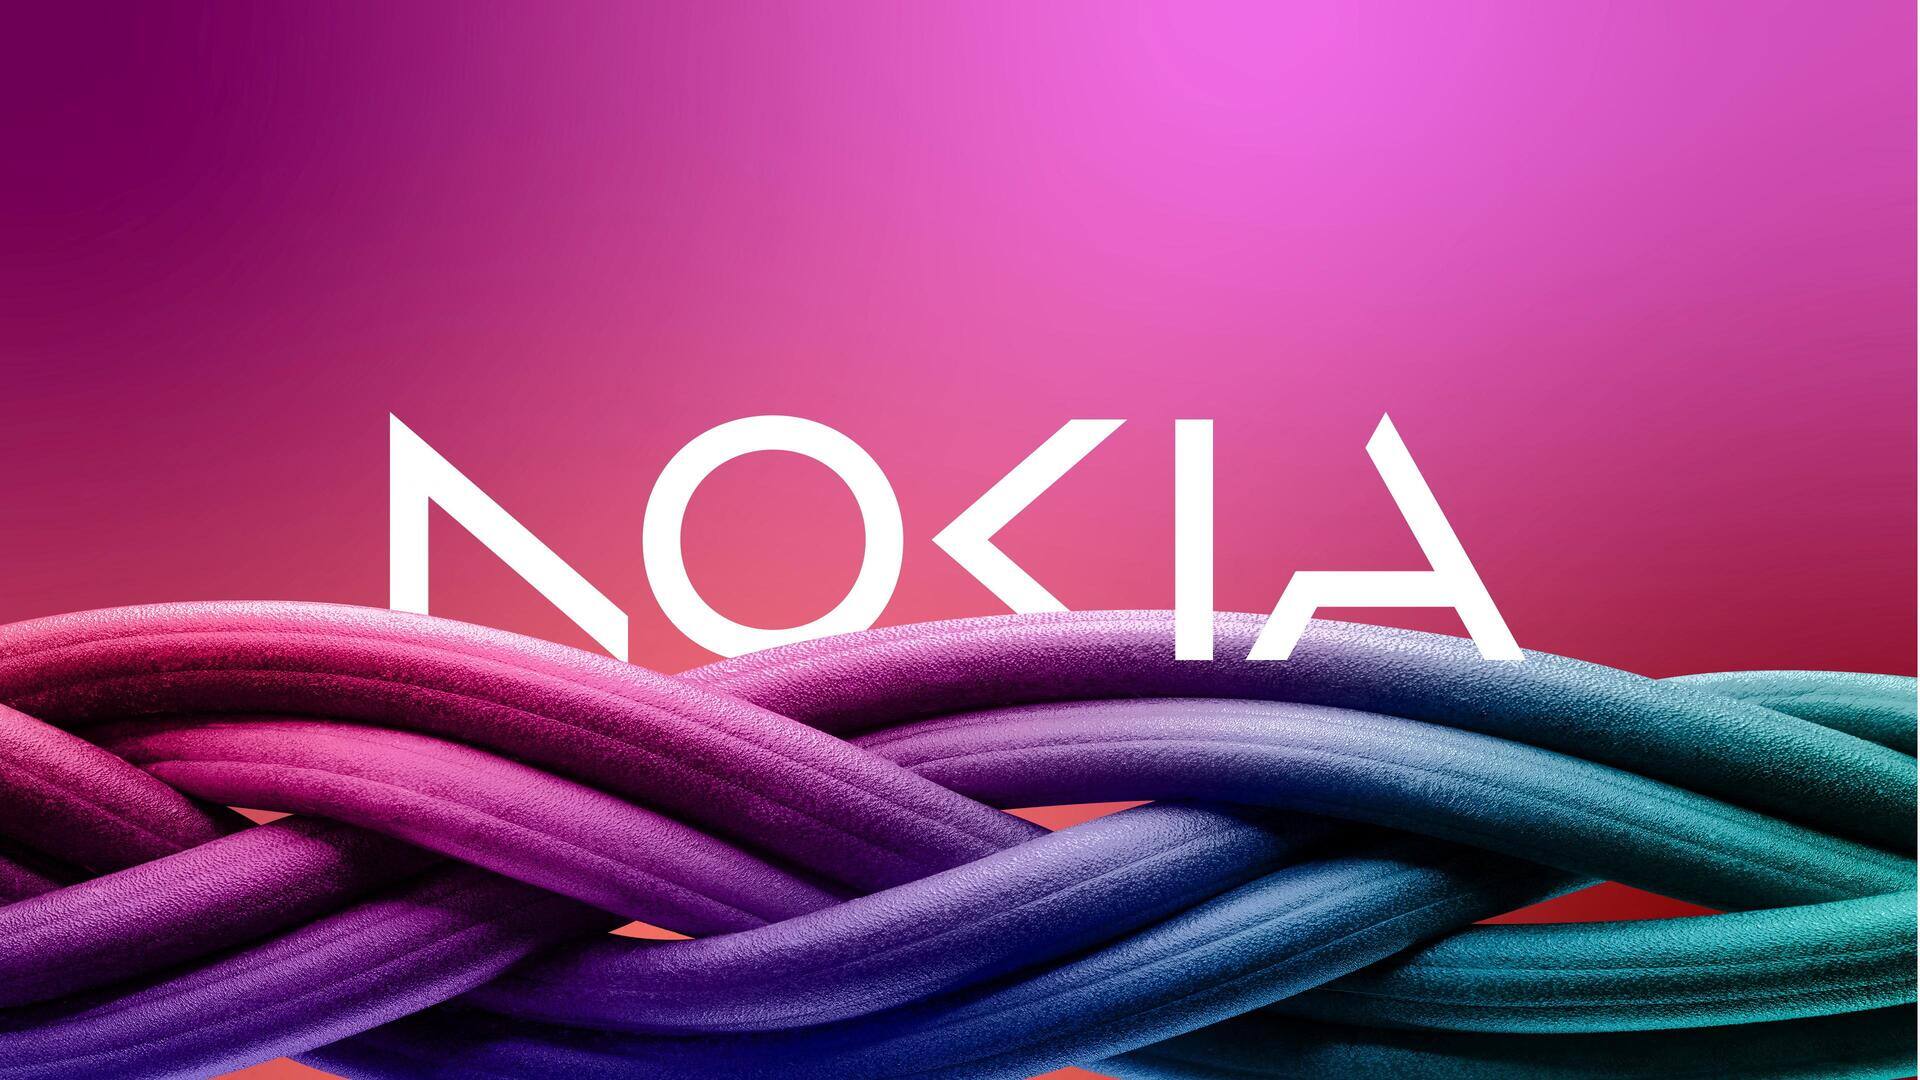 Nokia announces 14,000 job cuts amid 20% sales decline